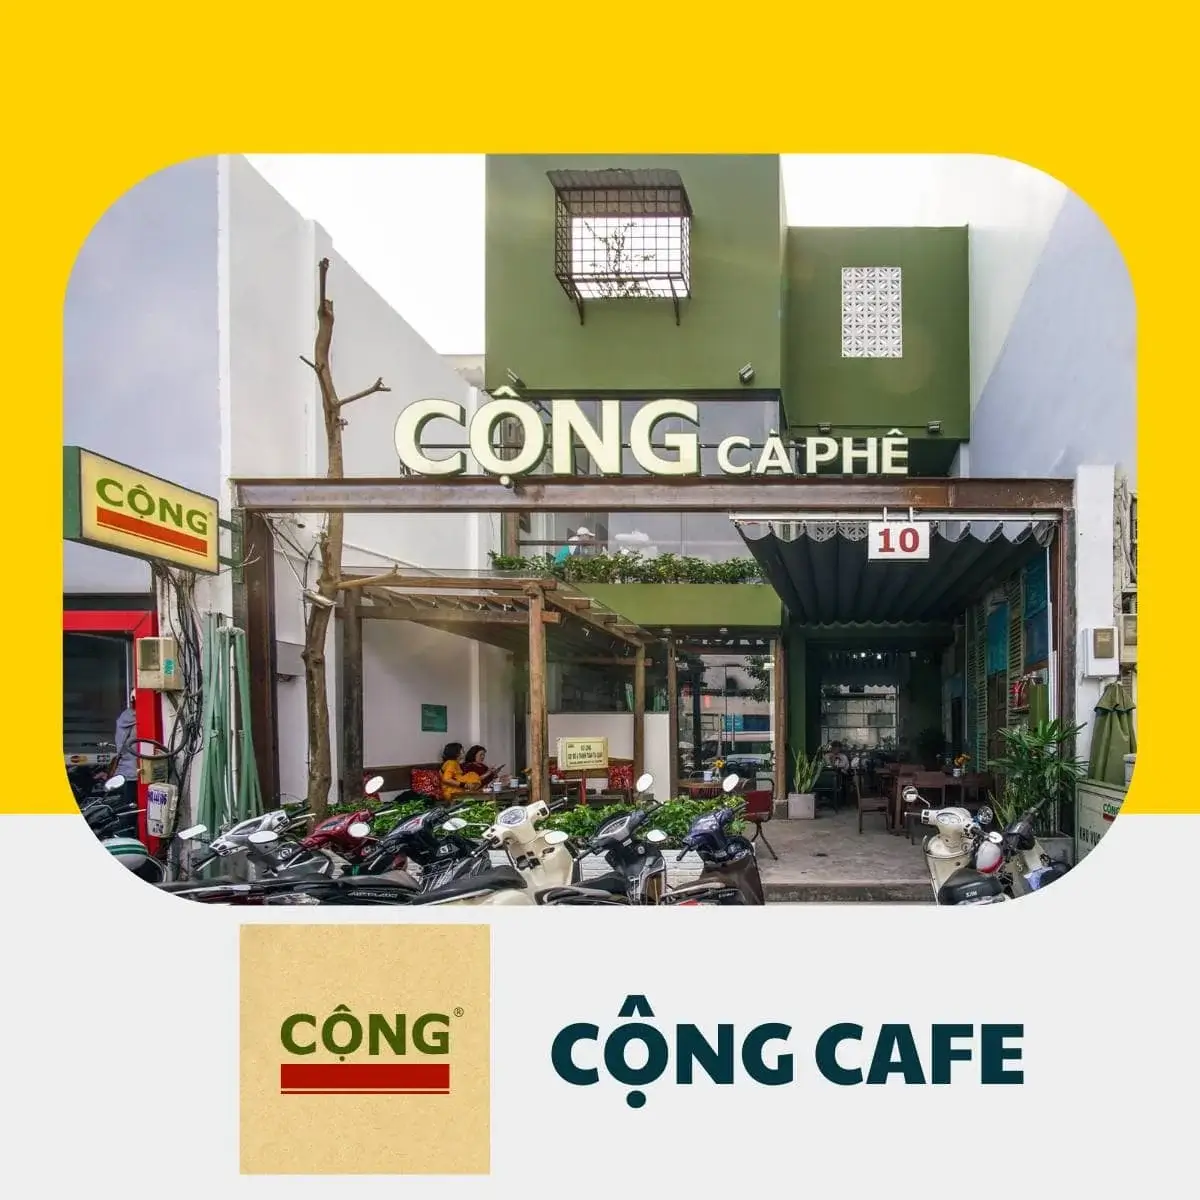 Cong cafe